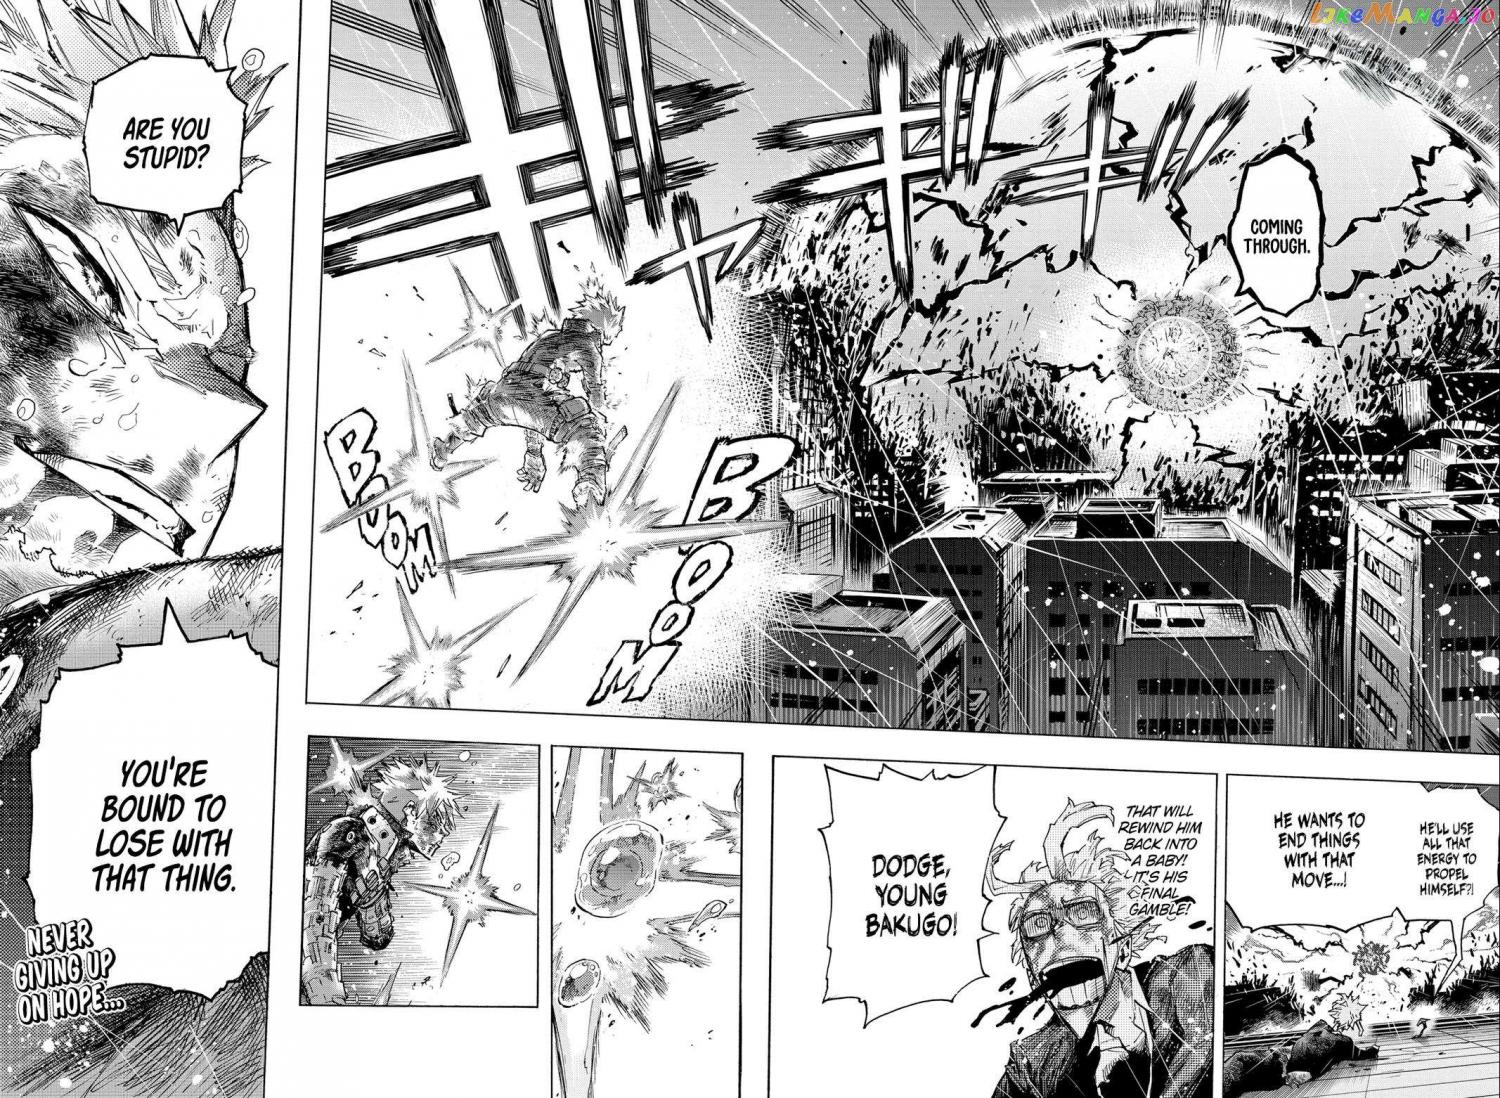 Boku no Hero Academia Ch.408 Page 4 - Mangago